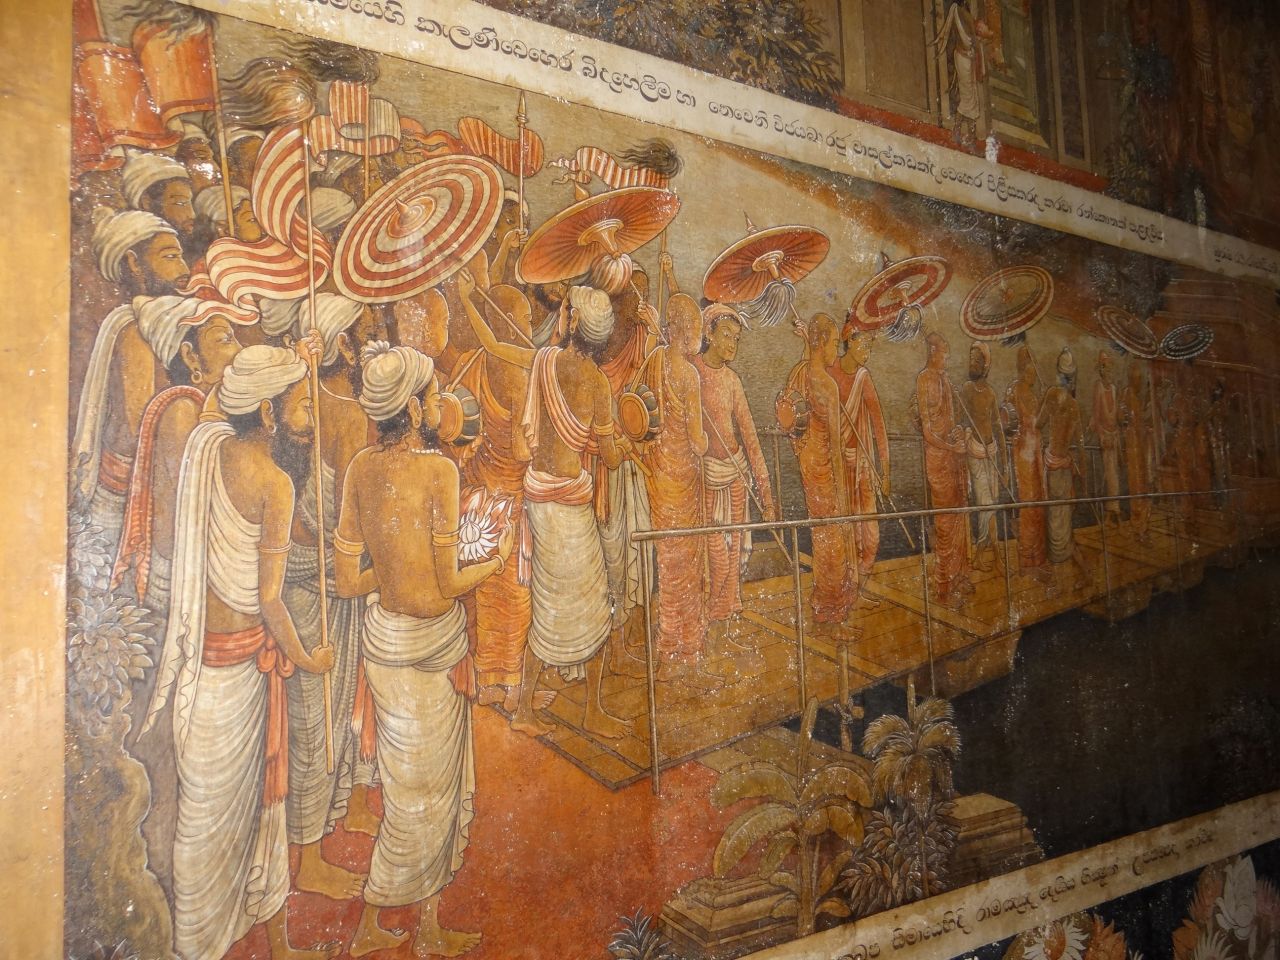 Фрески, украшающие стены храма, рассказывают истории из многочисленных жизней Будды, посещение храма Буддой, мифы и легенды.  - Шри-Ланка 2017. Часть 1.